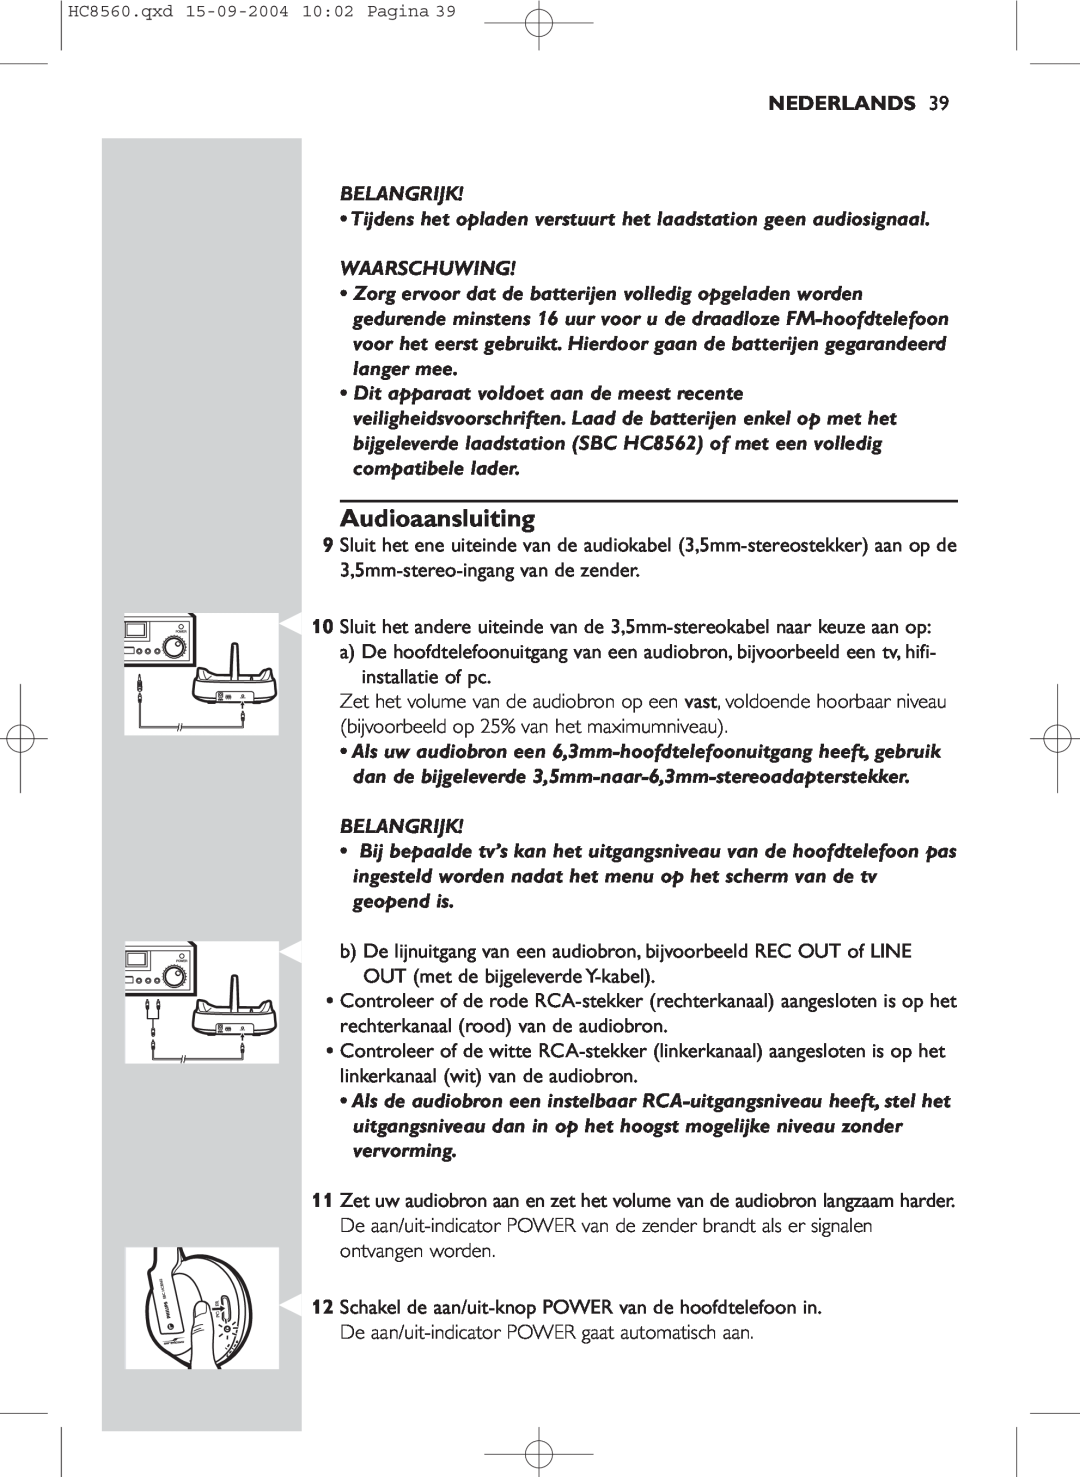 Philips HC 8560 manual Audioaansluiting, Nederlands, Belangrijk, Waarschuwing 